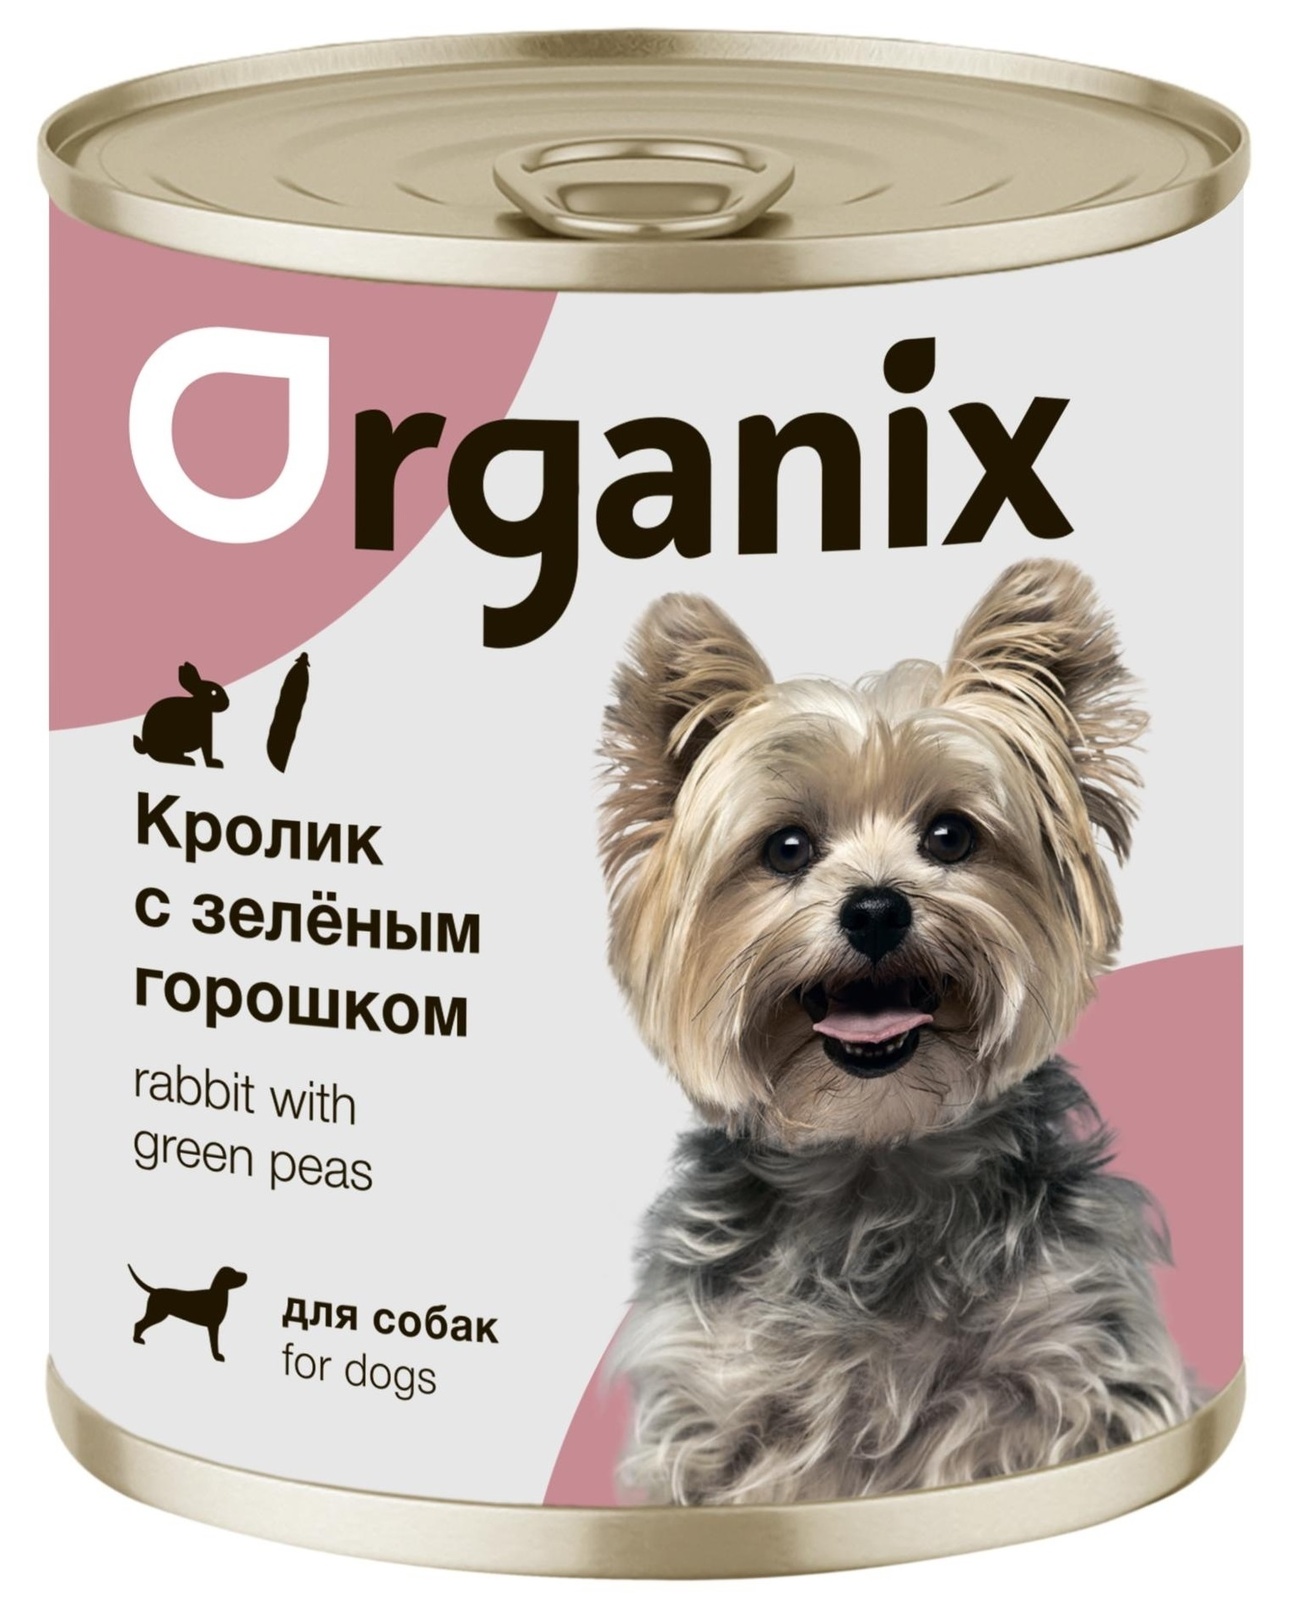 Organix консервы Organix консервы для собак Кролик с зеленым горошком (400 г) organix консервы organix консервы для собак телятина с зеленой фасолью 400 г